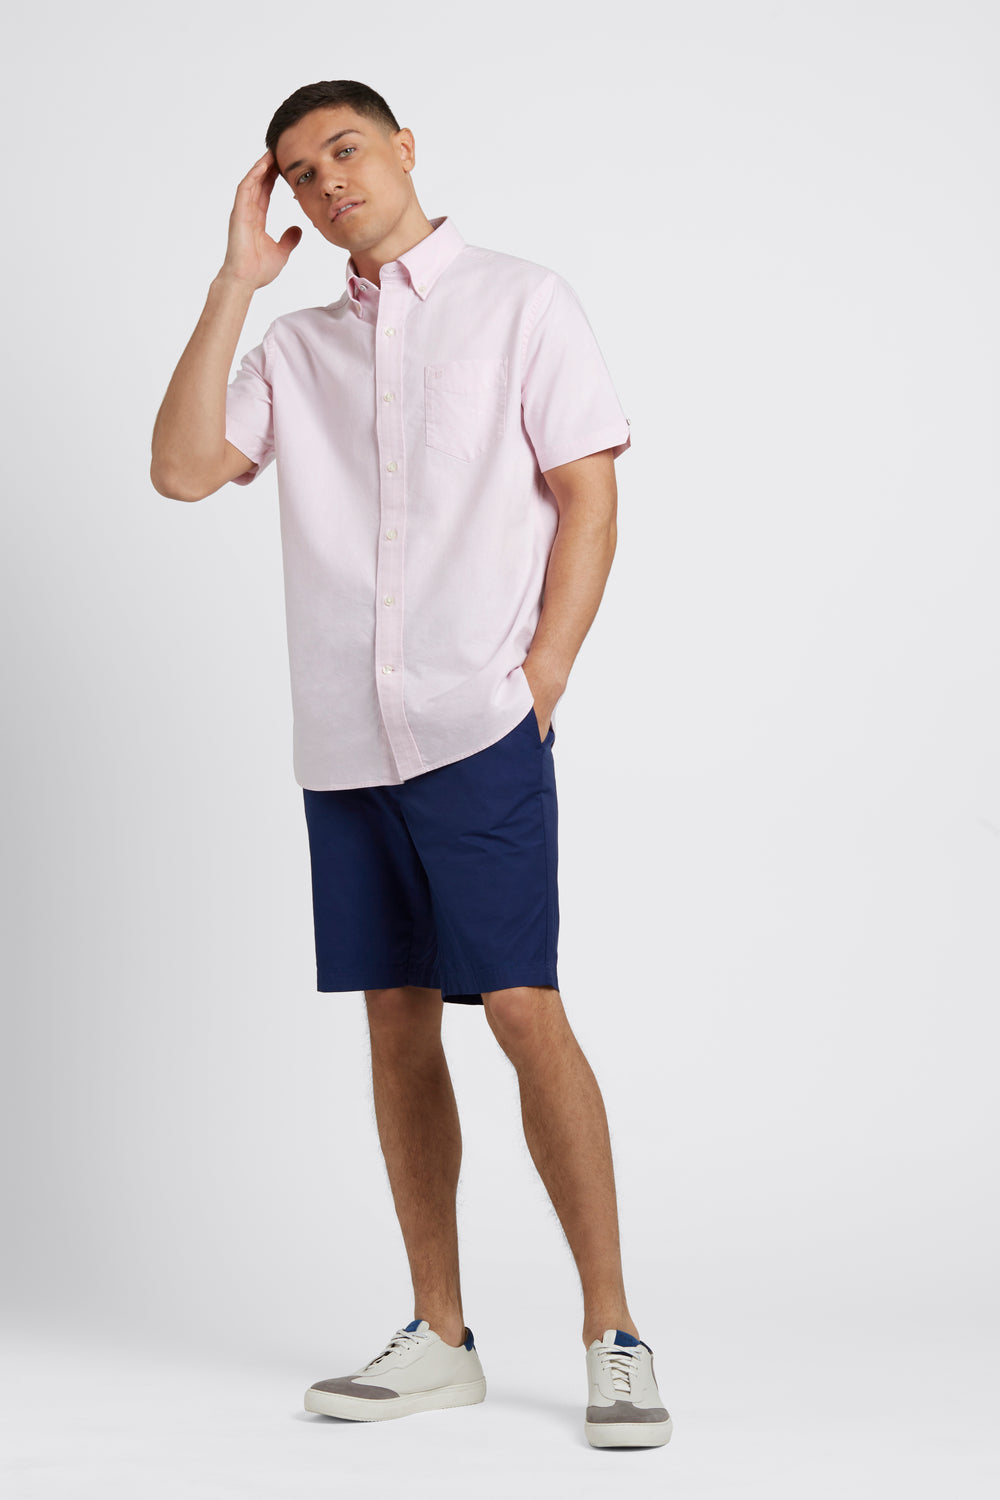 Men's Short Sleeve Dress Shirt Adaptive Clothing for Seniors, Disabled &  Elderly Care